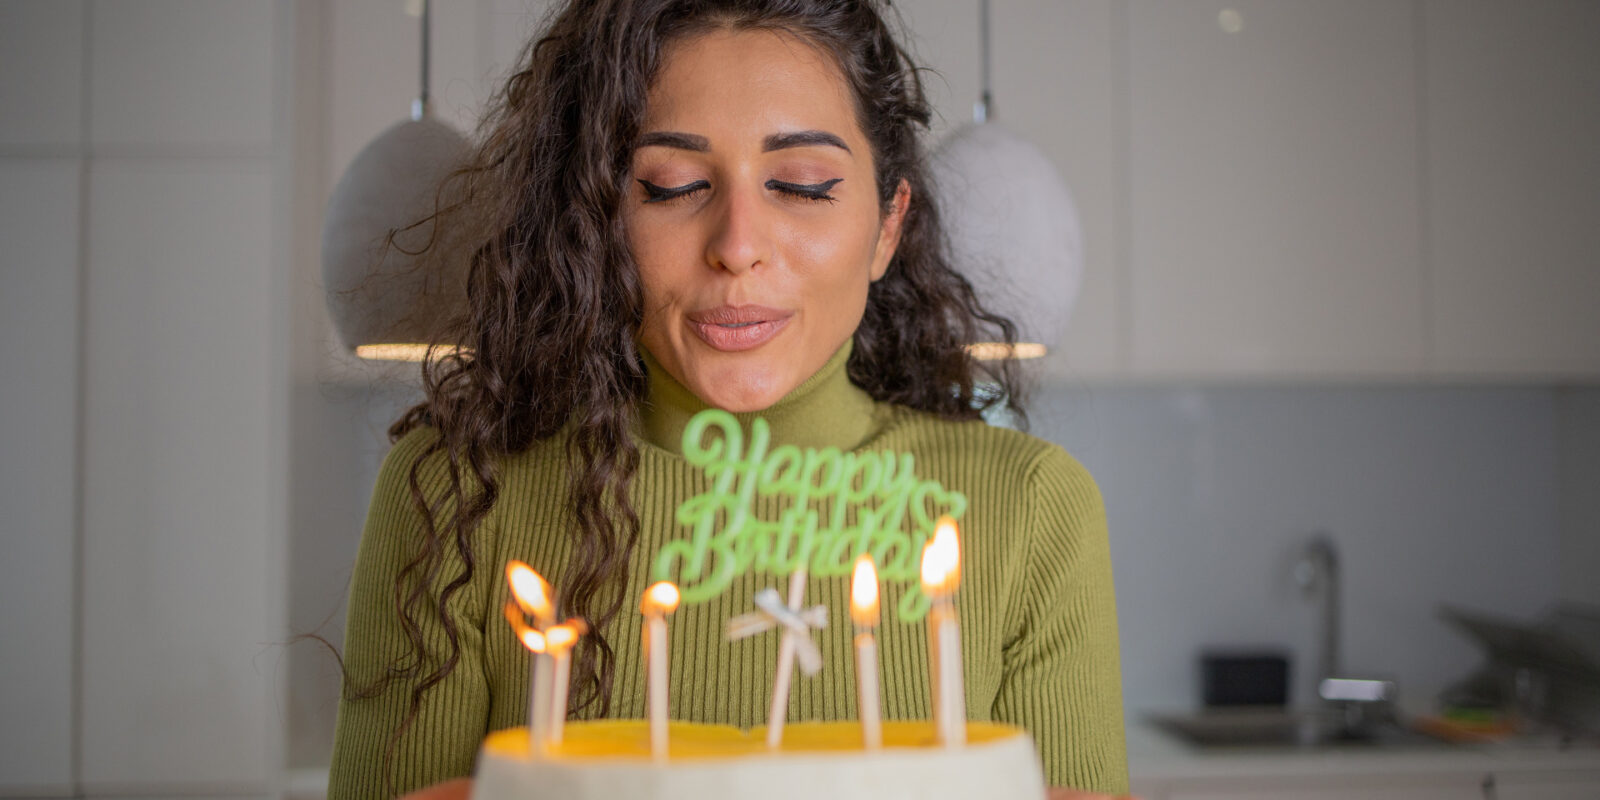 Geburtstag vergessen: Sprüche und Tipps für nachträgliches Gratulieren und Entschuldigung